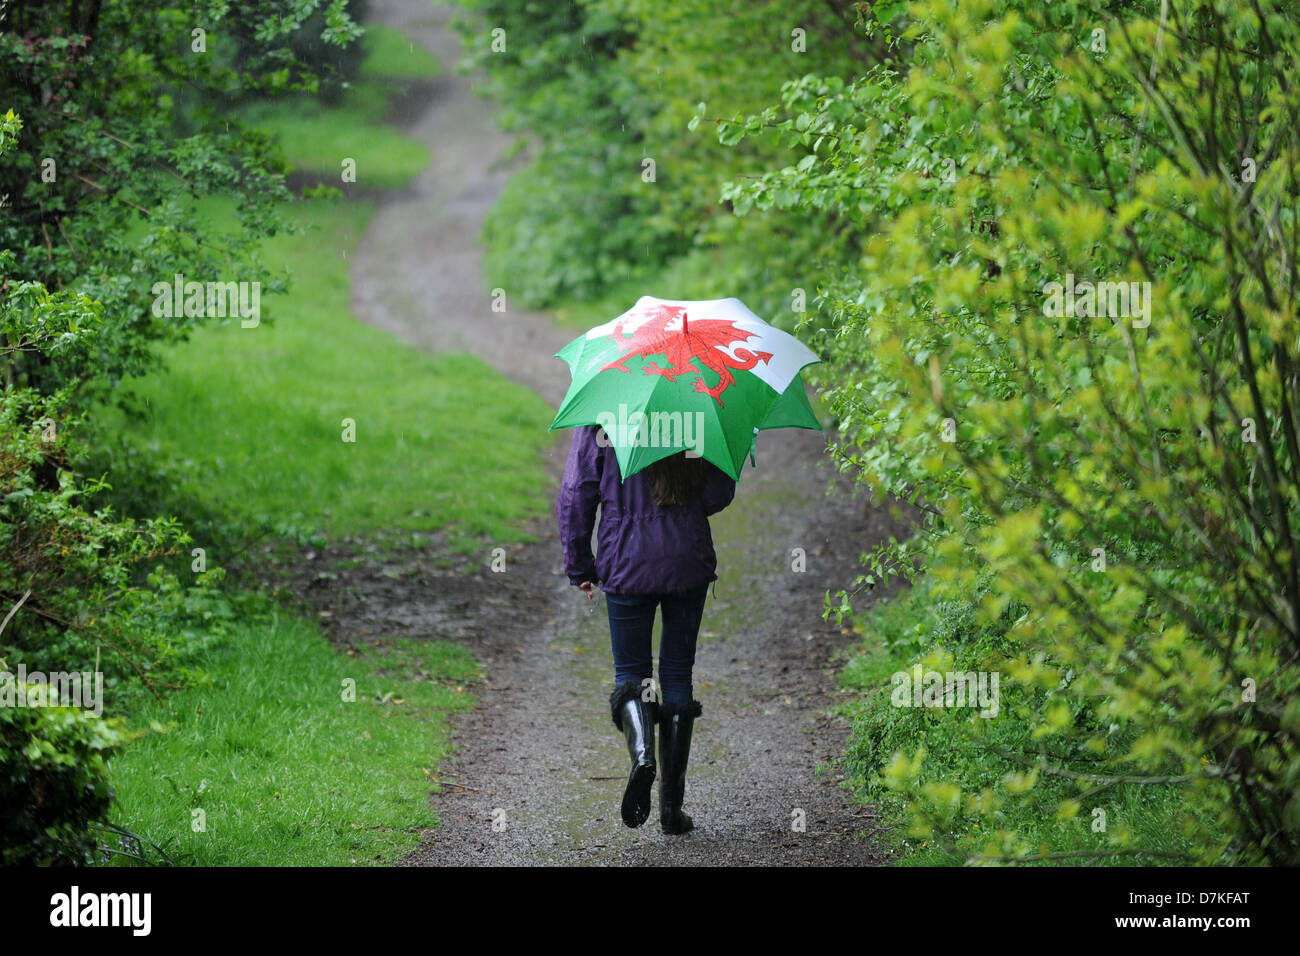 Cardiff, Wales, UK. Le 9 mai 2013. Une fille utilise un parapluie pour l'abri de la pluie en Rhiwbina, Cardiff. Plus le temps humide a été prévu pour la fin de semaine. Crédit : Matthieu Horwood /Alamy Live News Banque D'Images